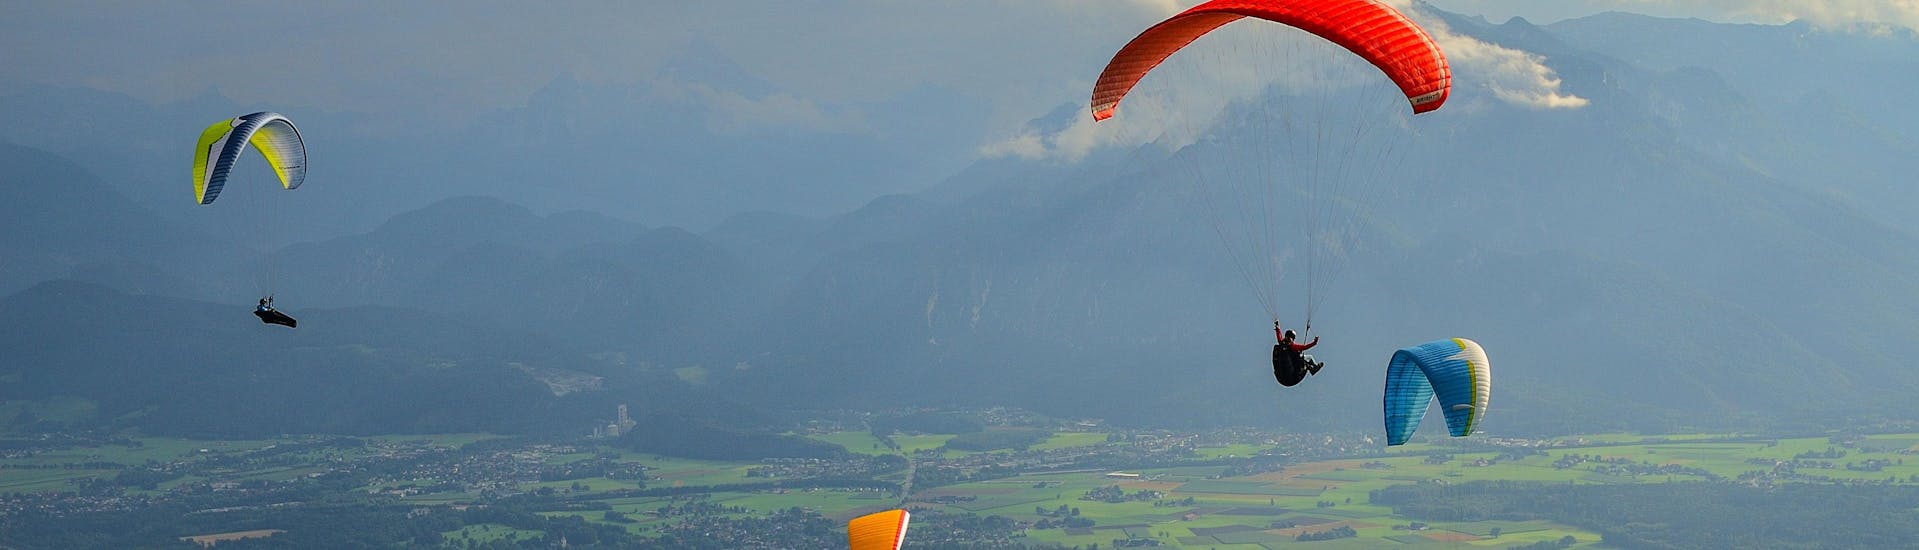 Un entusiasmado participante en un vuelo en parapente biplaza sobrevuela Salzburgo, uno de los sitios más populares para volar en parapente.